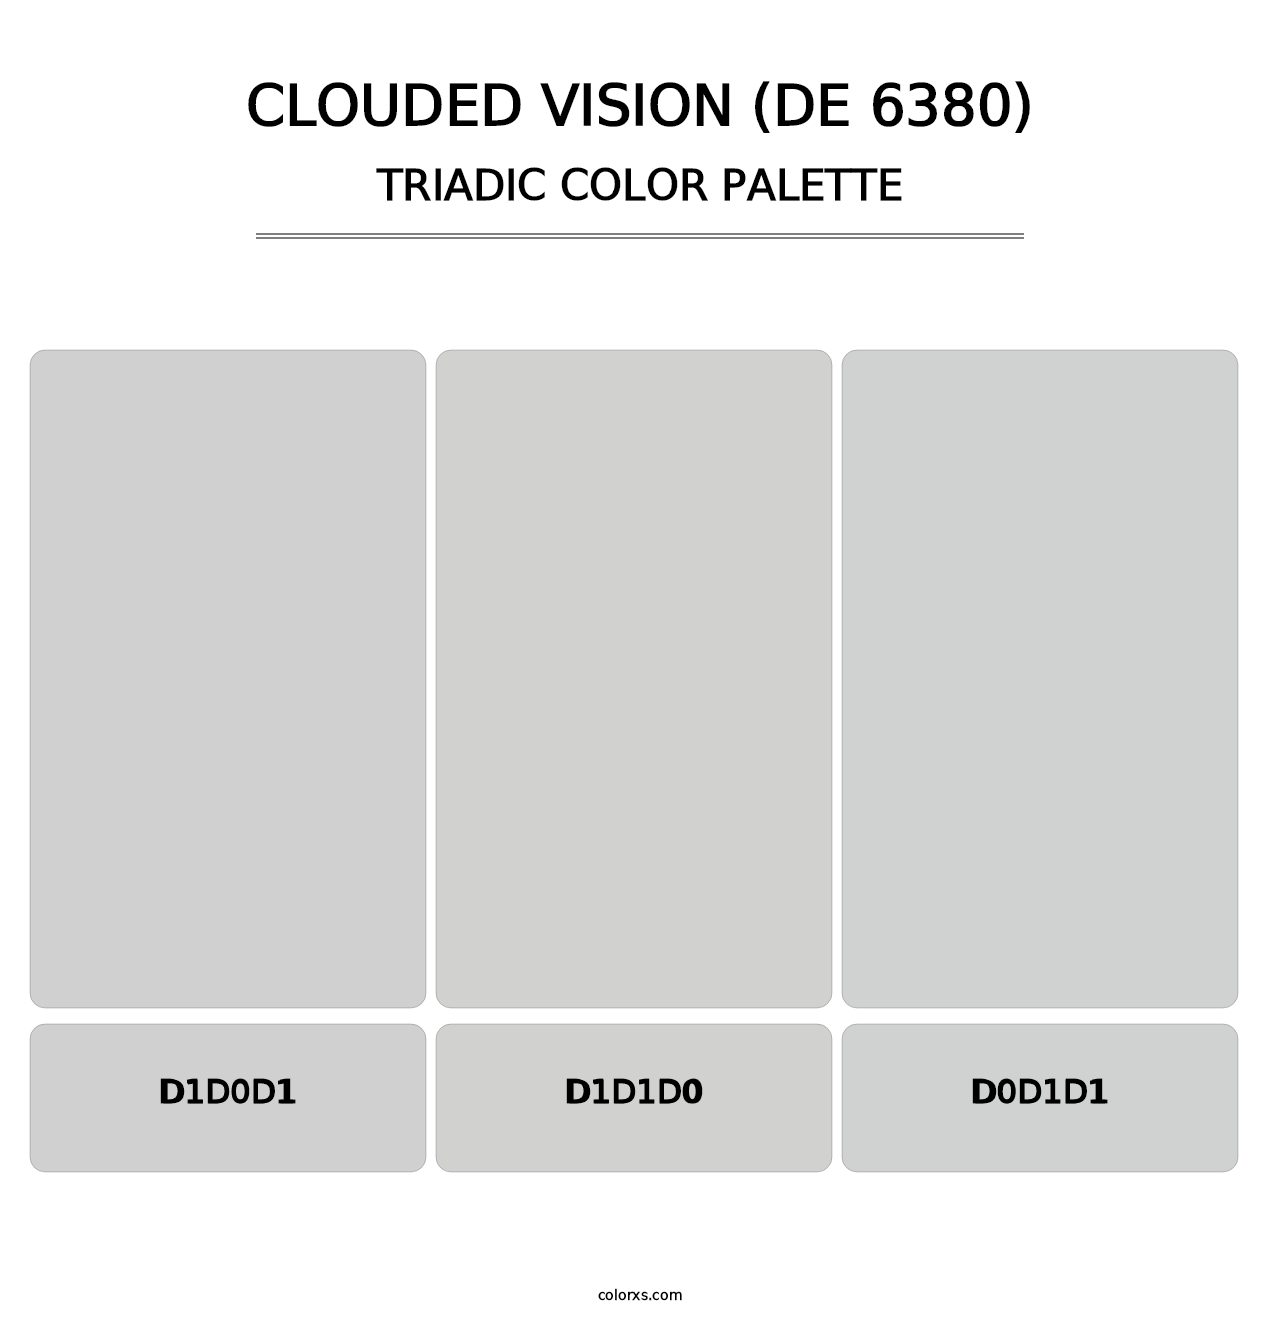 Clouded Vision (DE 6380) - Triadic Color Palette